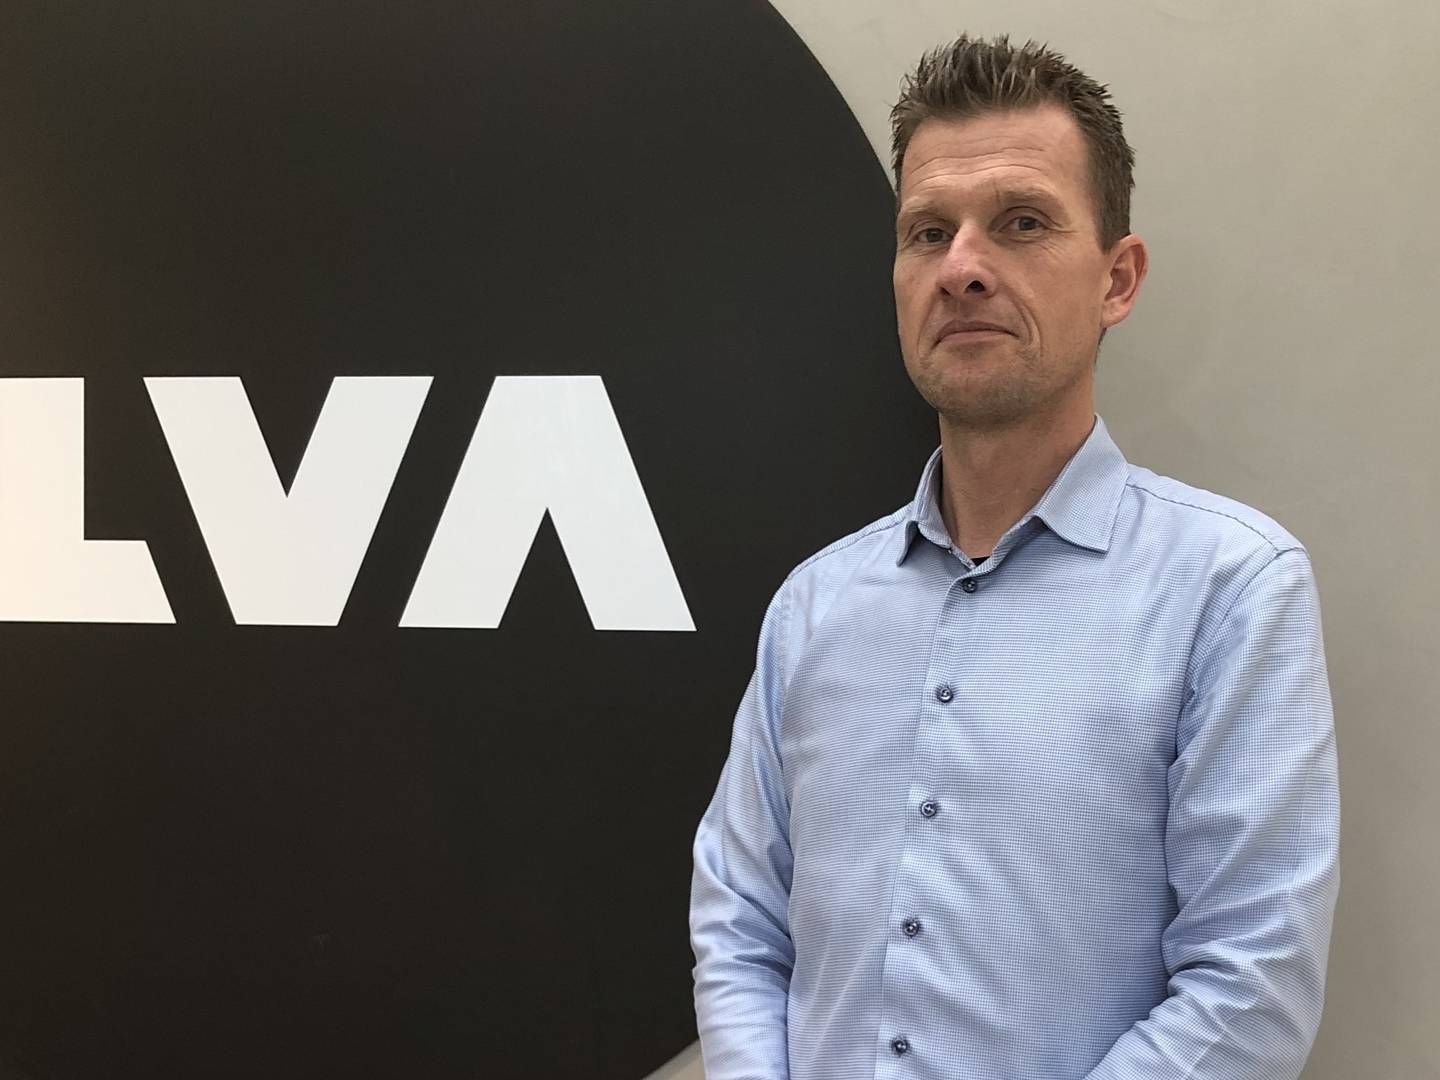 Ilva-direktør Martin Hallund udtalte i retten, at han frygtede at blive fyret, såfremt han ville blive dømt i landsretten. | Photo: PR/Ilva